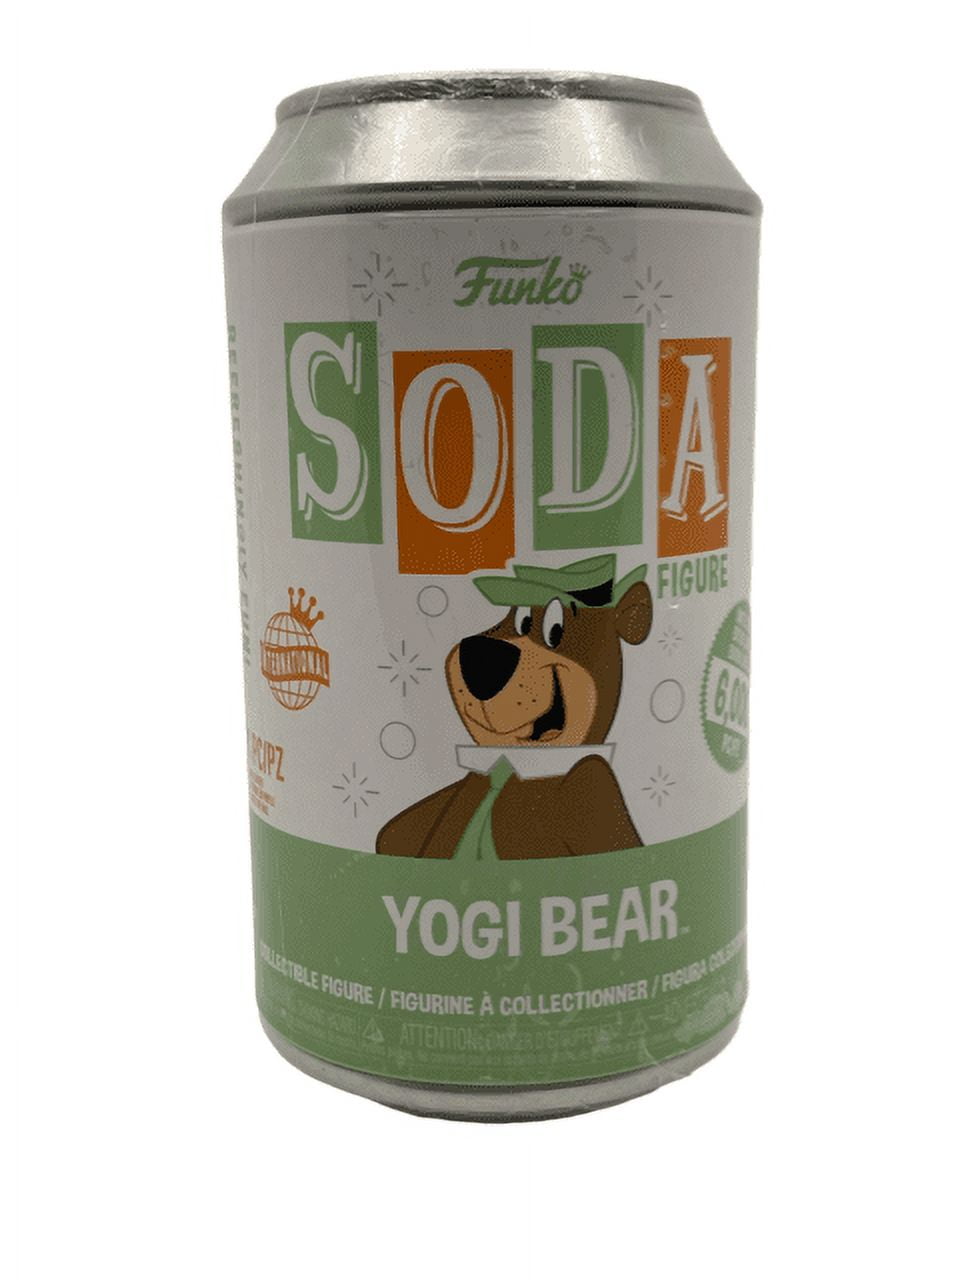 Funko Vinyl Soda Can Hanna Barbera Yogi Bear Limited Edition 6,000 (Styles  May Vary)*